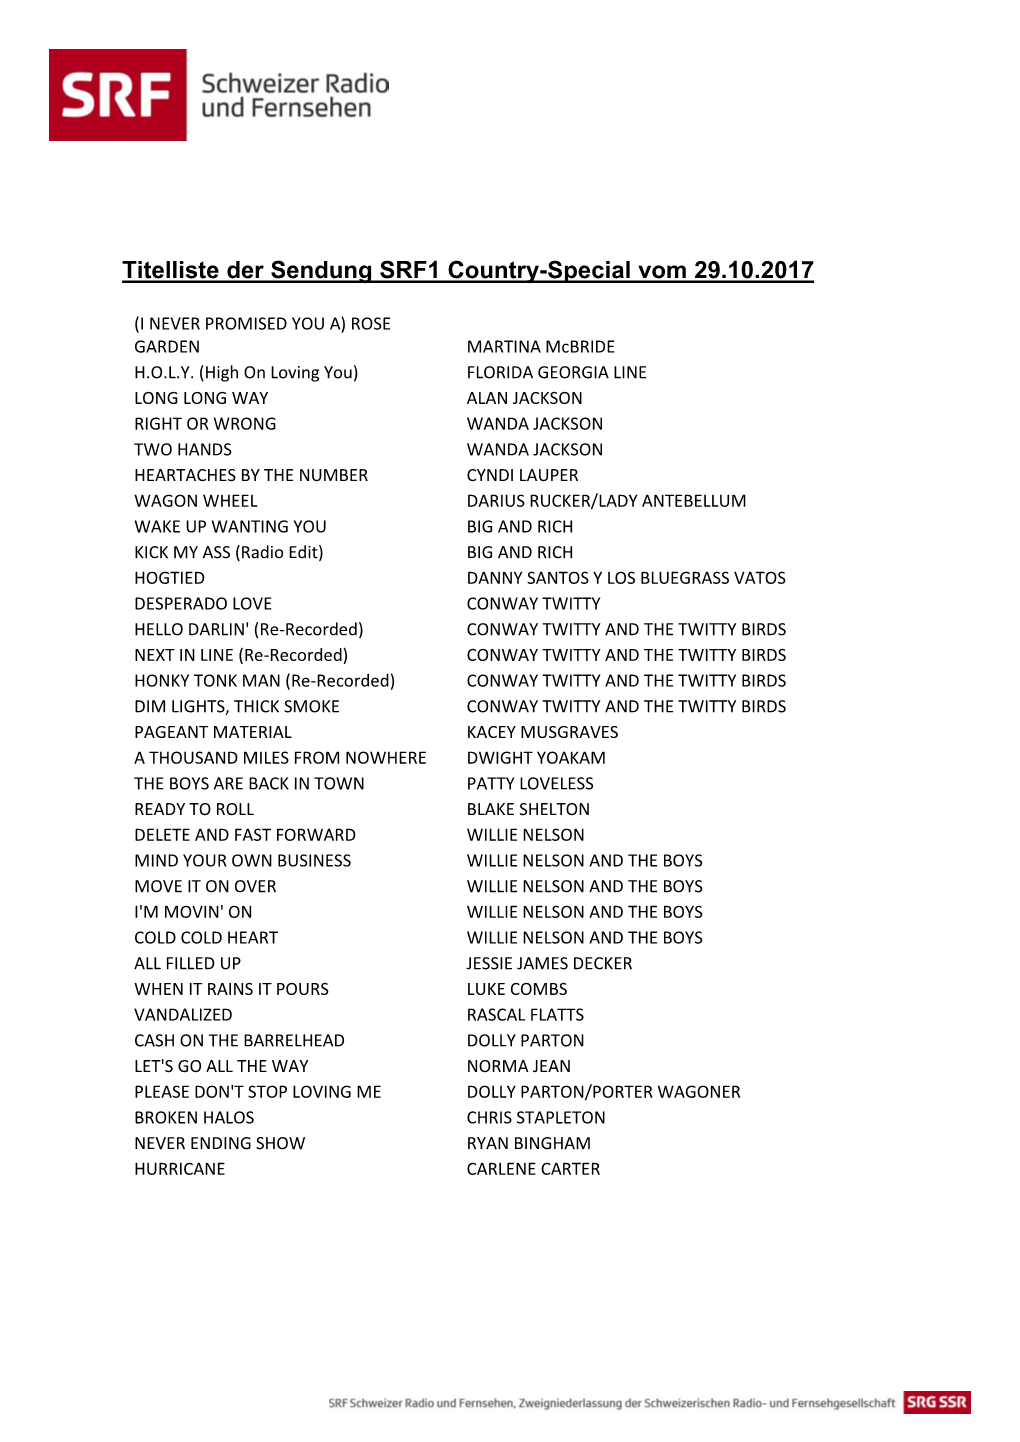 Titelliste Der Sendung SRF1 Country-Special Vom 29.10.2017